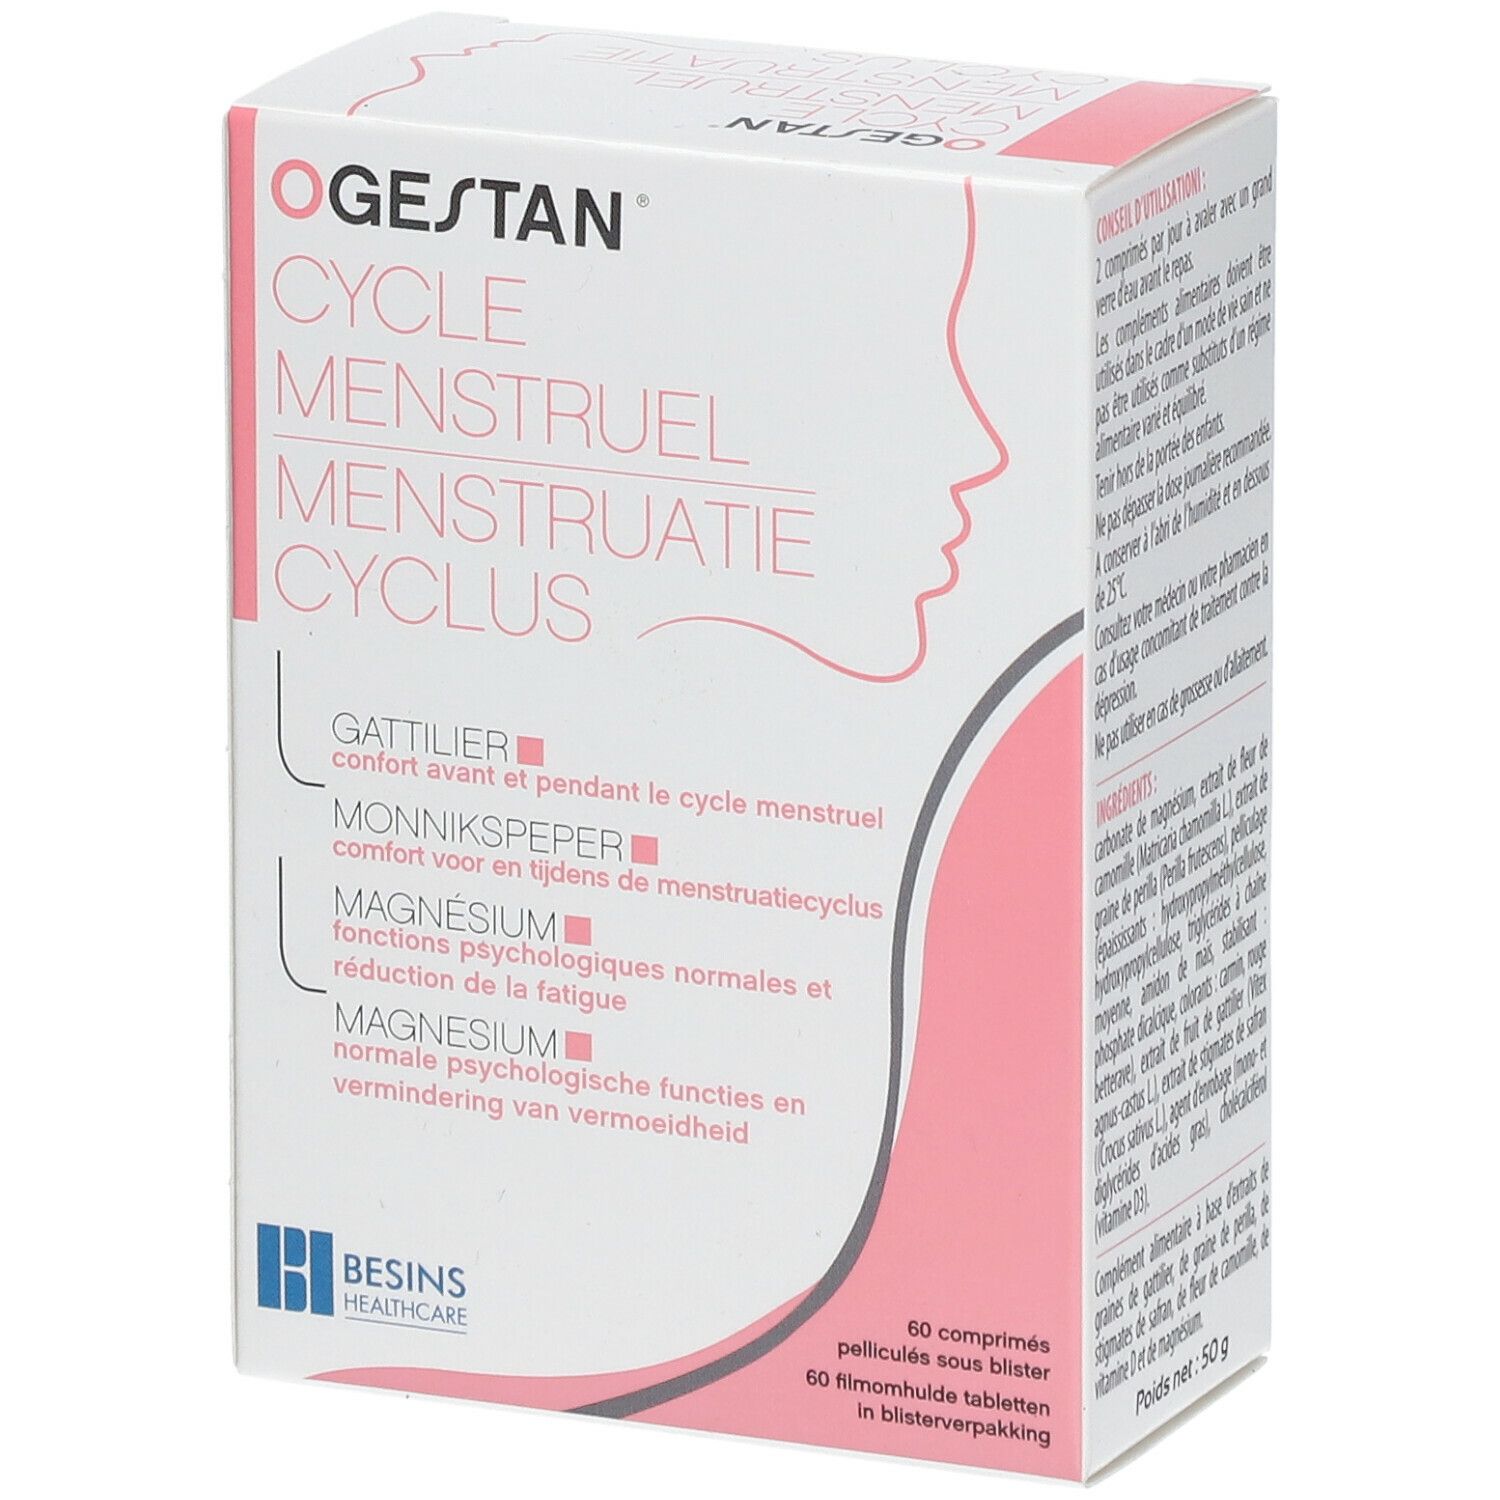 Ogestan® Cycle menstruel